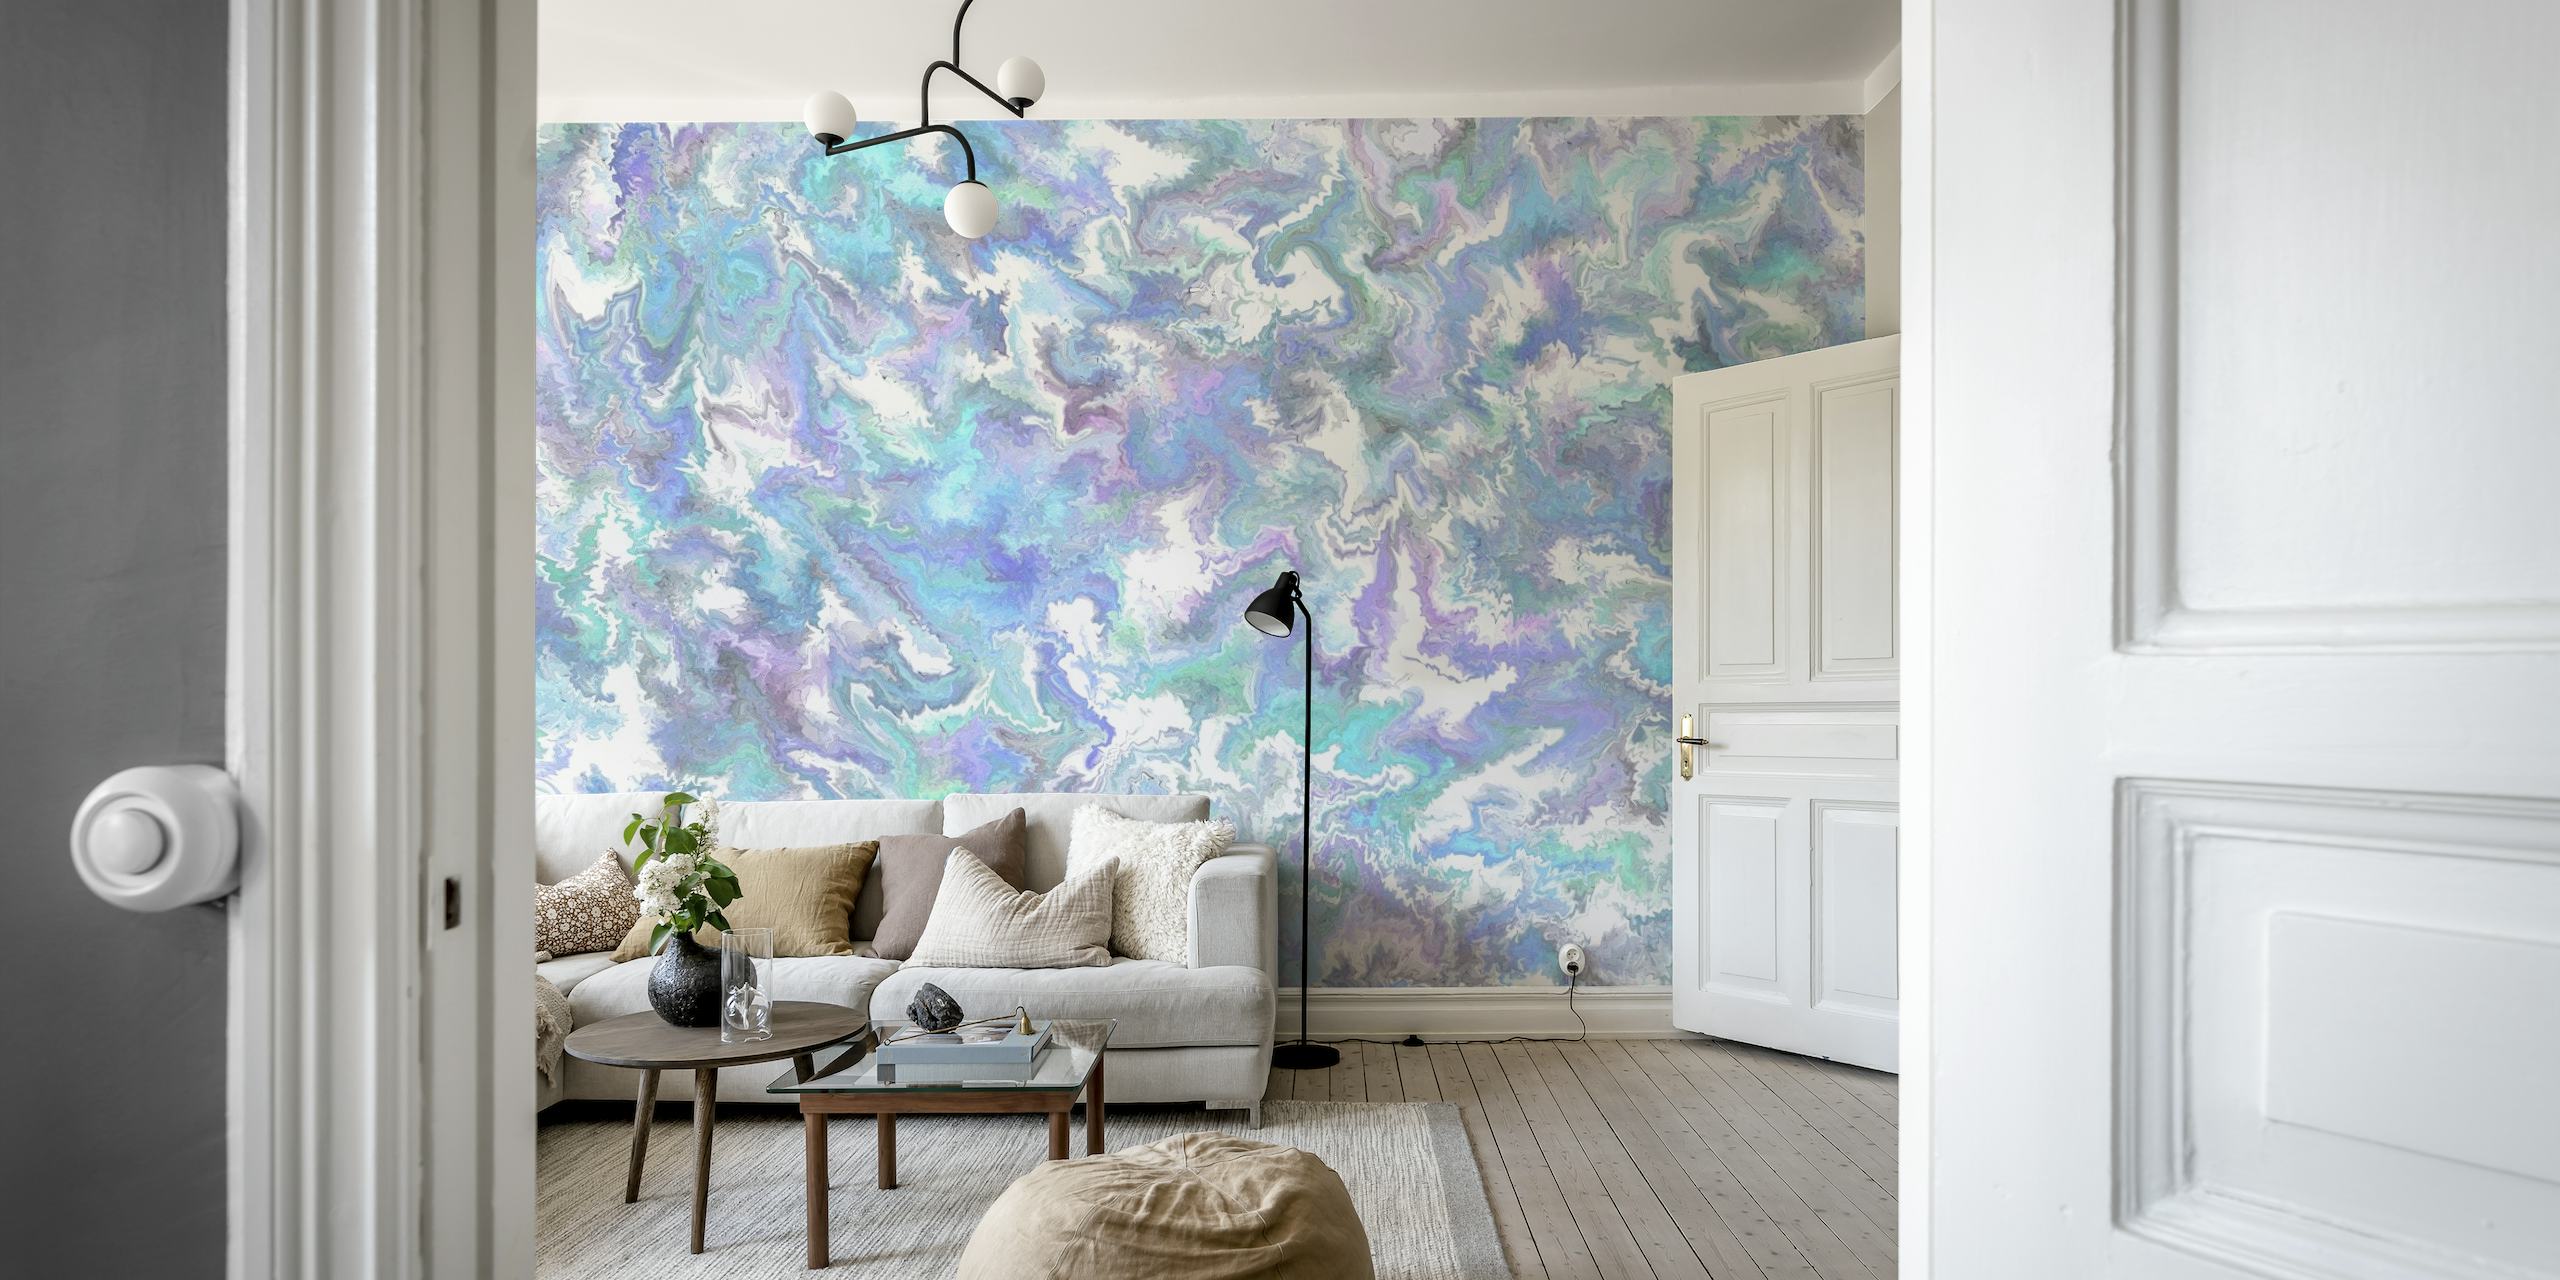 Apstraktna plava i boja lavande fluidna umjetnička zidna slika